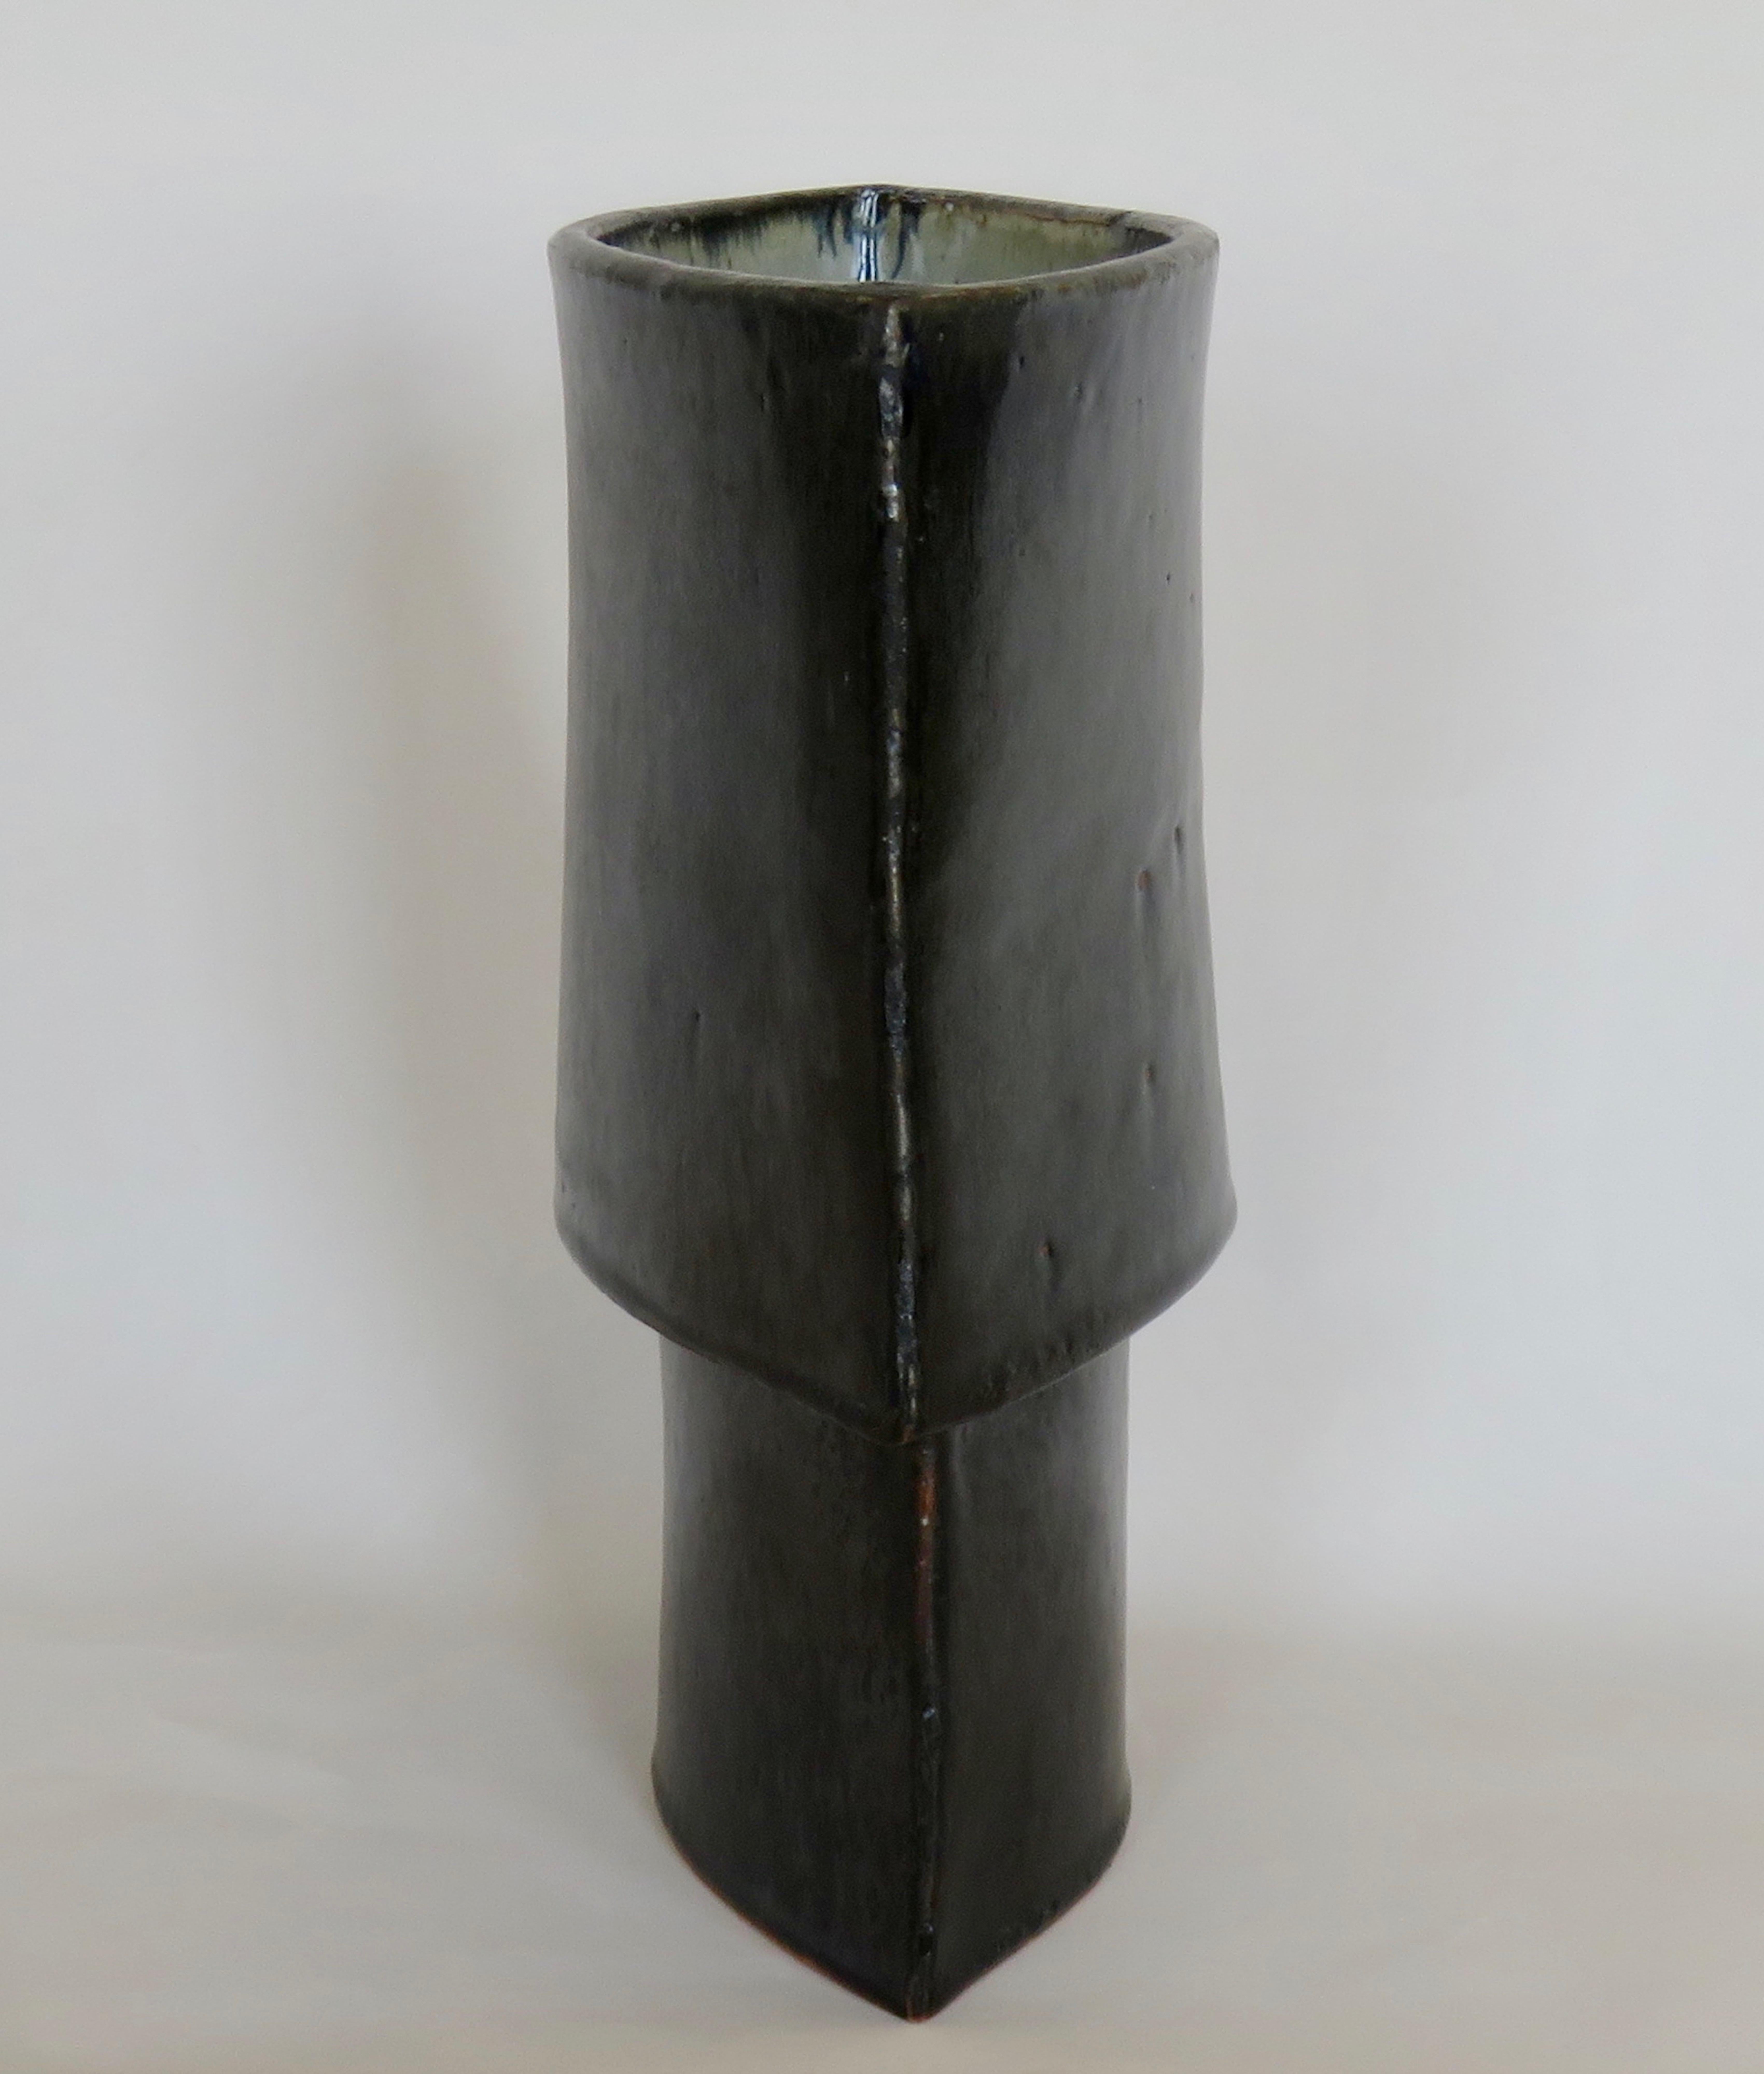 Glazed Large Hand Built Ceramic Vase, Architectural Construction in Mottled Black Glaze